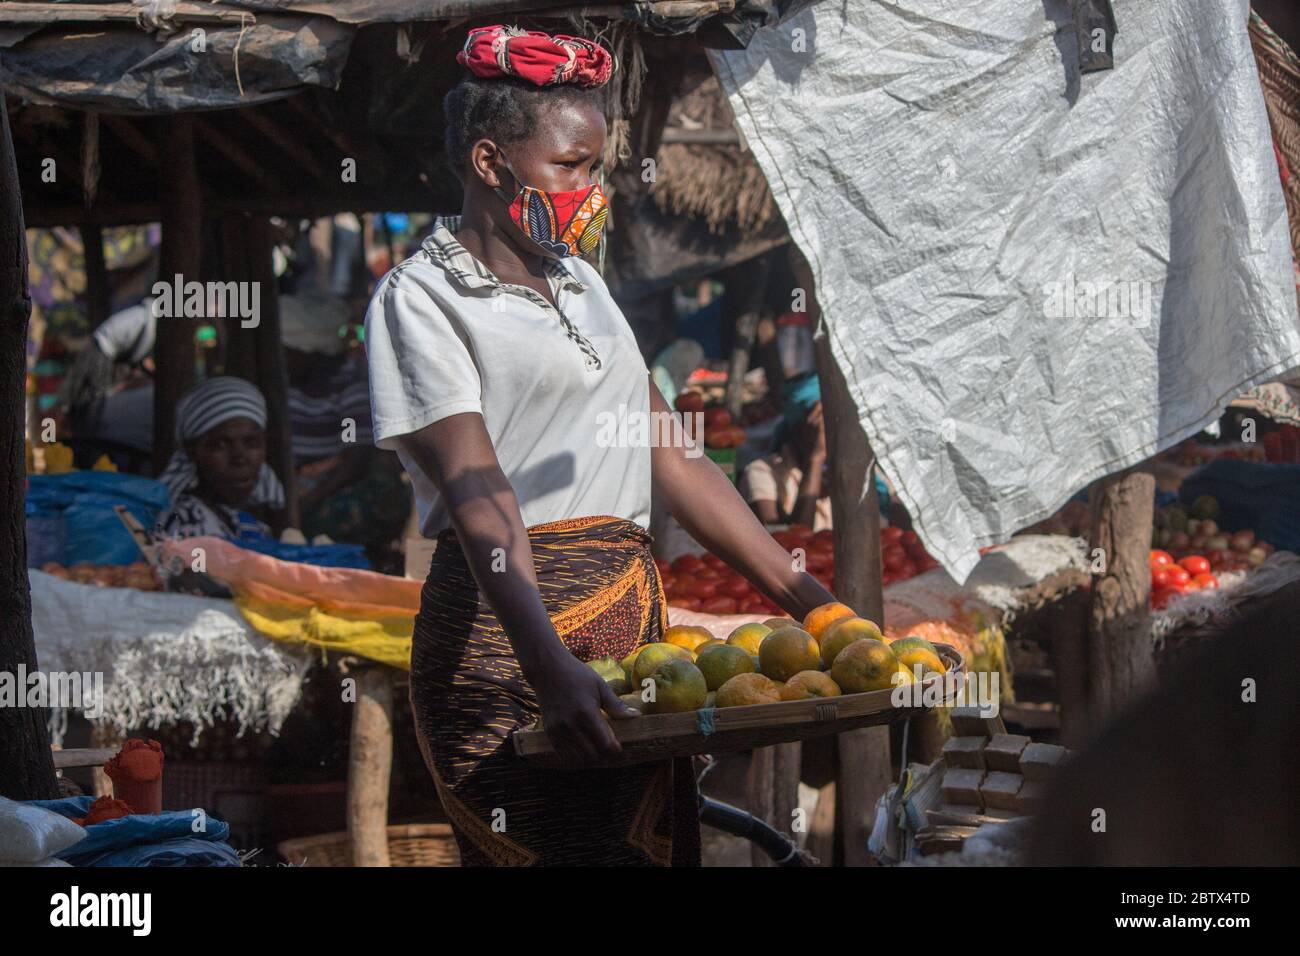 Fille de vendeur de rue informelle sur le marché, portant un masque de visage en tissu sarong africain pour la protection contre le virus corona Banque D'Images